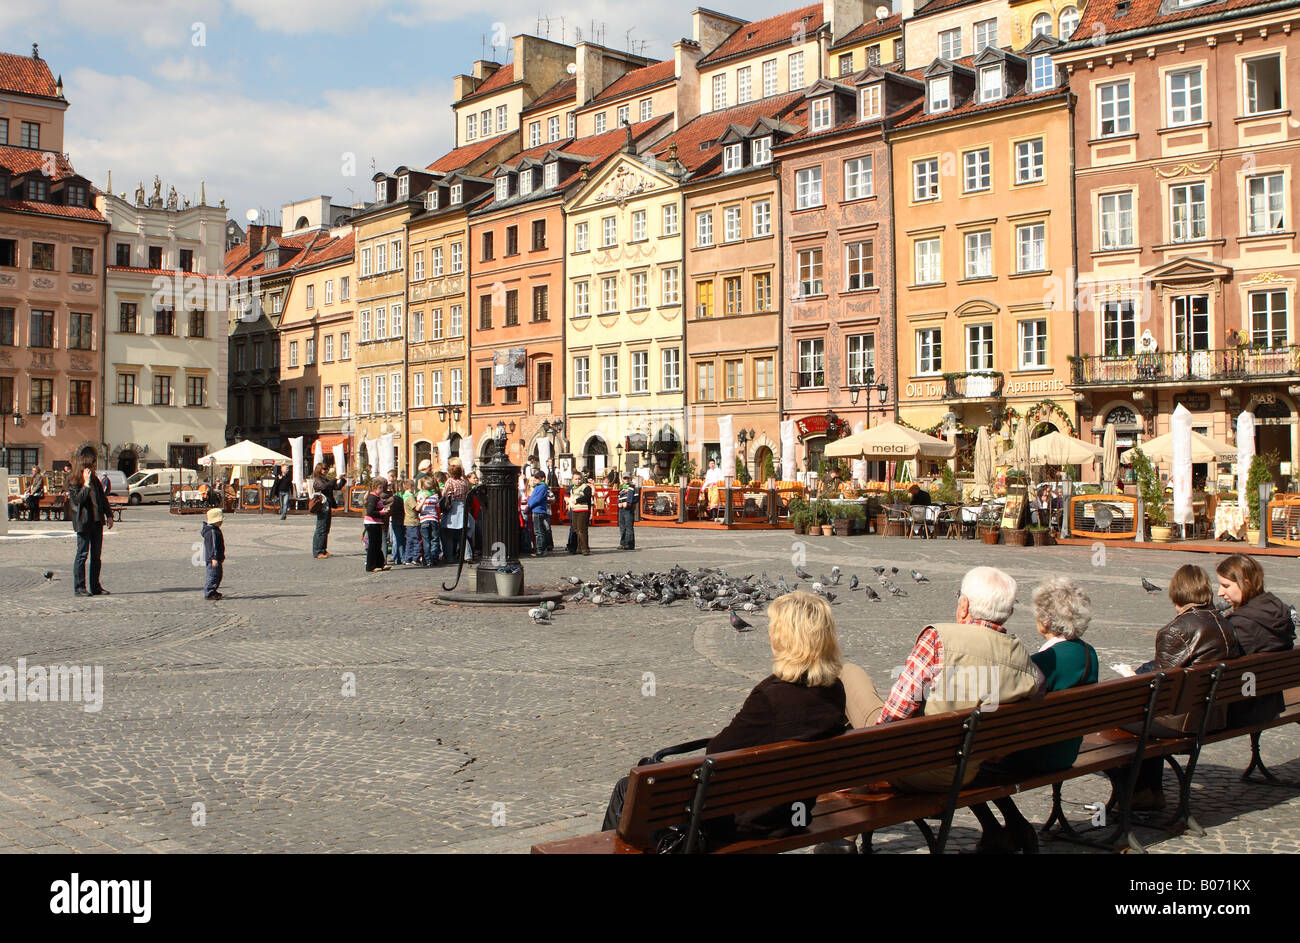 Warschau Polen der alten Stadt Square Stare Miasto ist ein UNESCO-Weltkulturerbe Wahrzeichen und touristische Attraktion Stockfoto